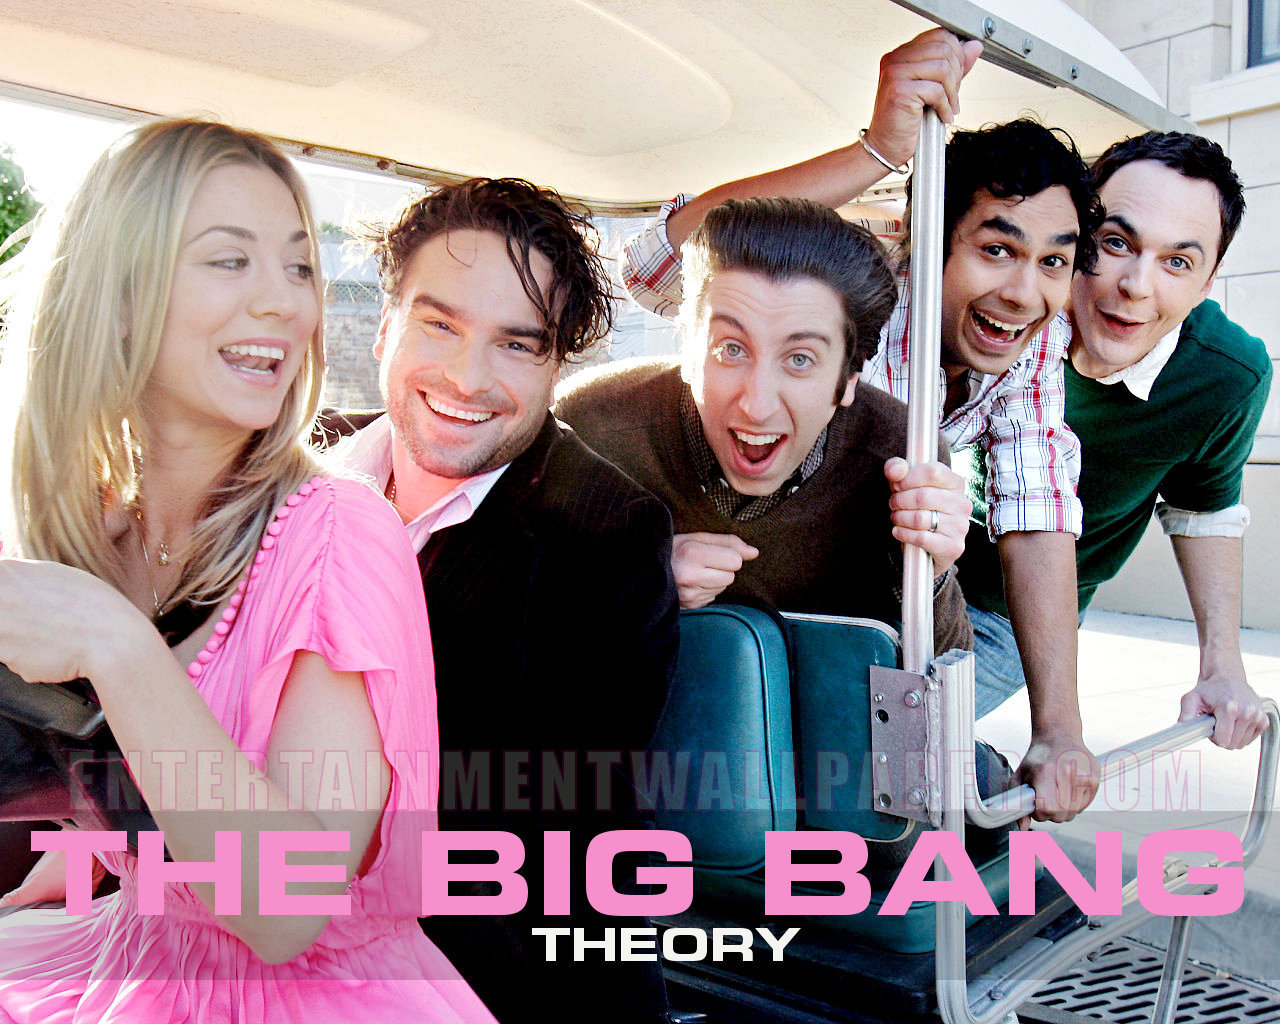 76+] Big Bang Theory Wallpapers - WallpaperSafari